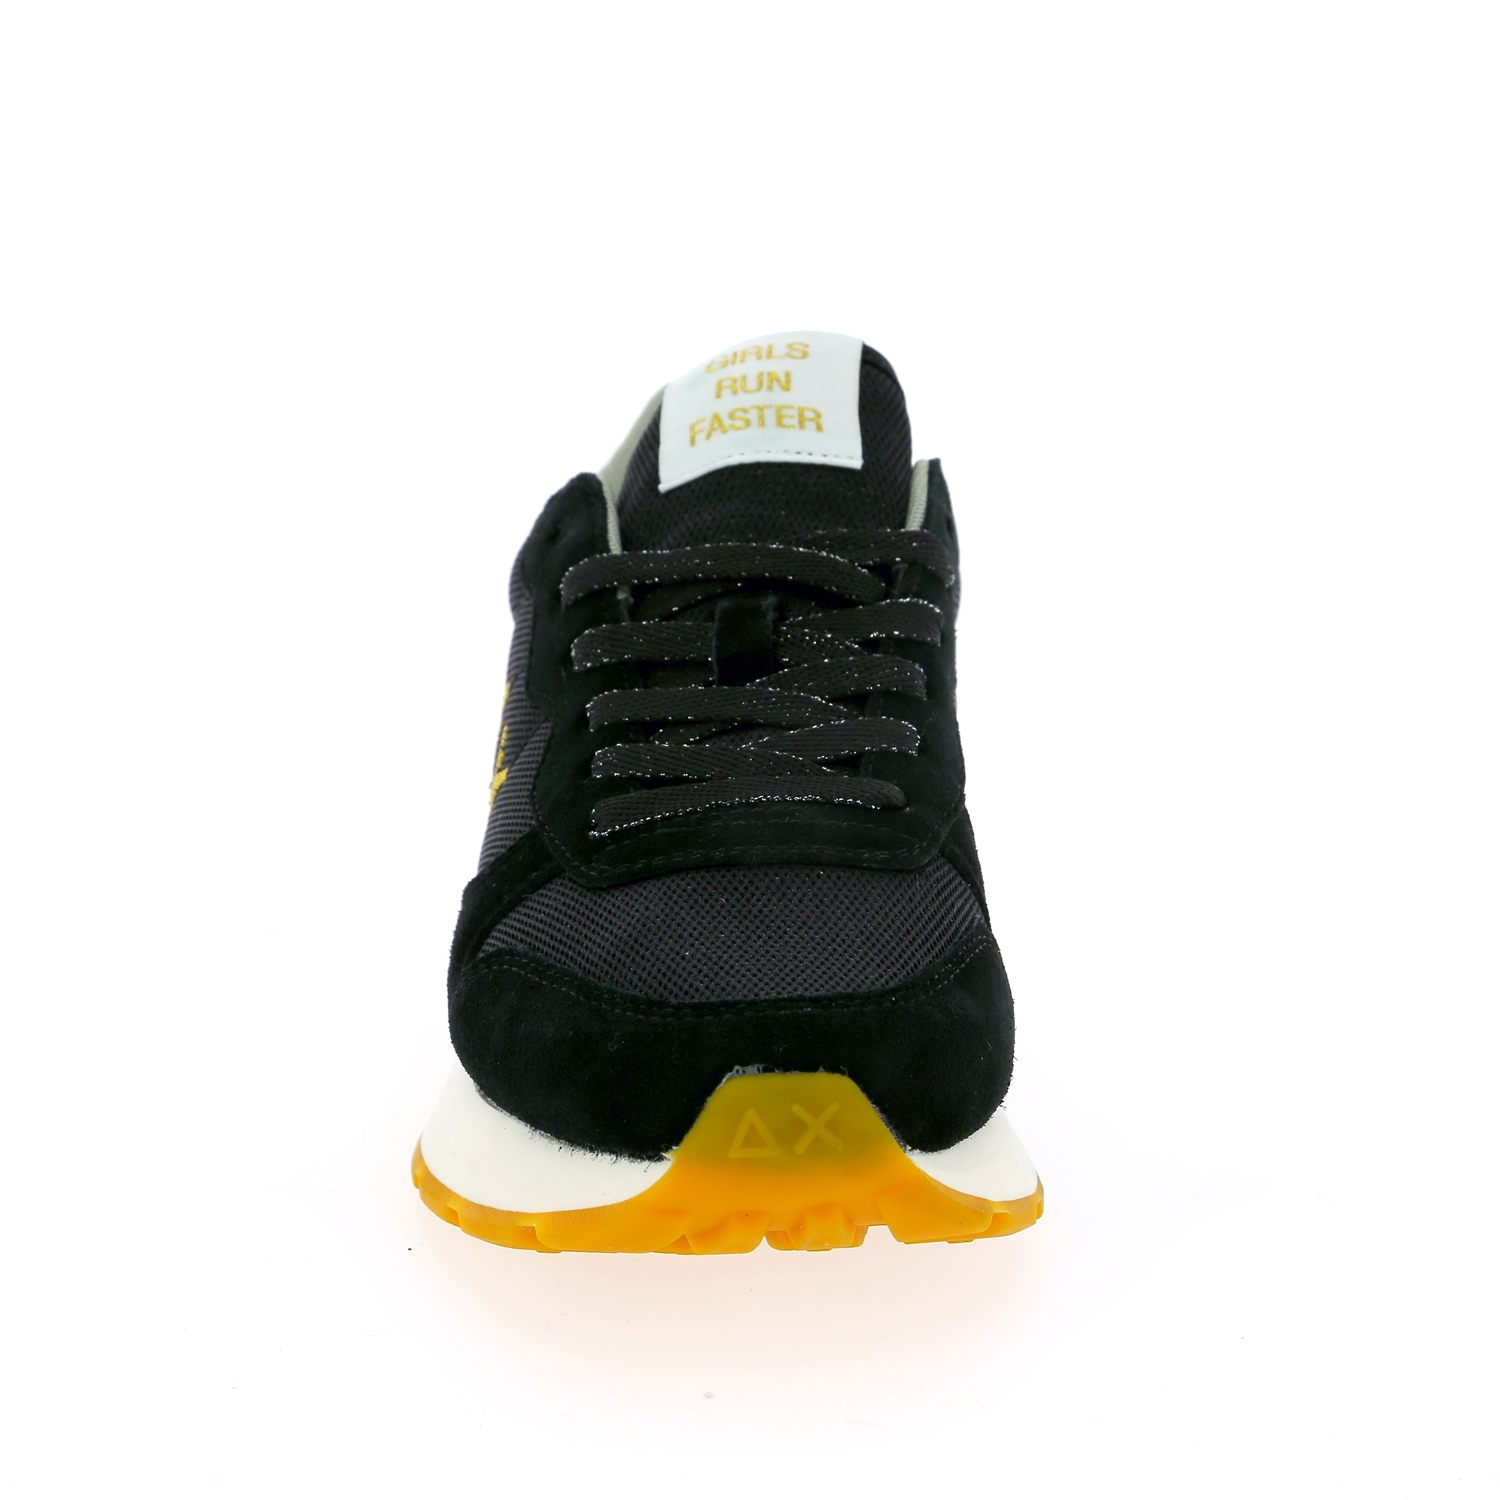 Sun68 Sneakers zwart